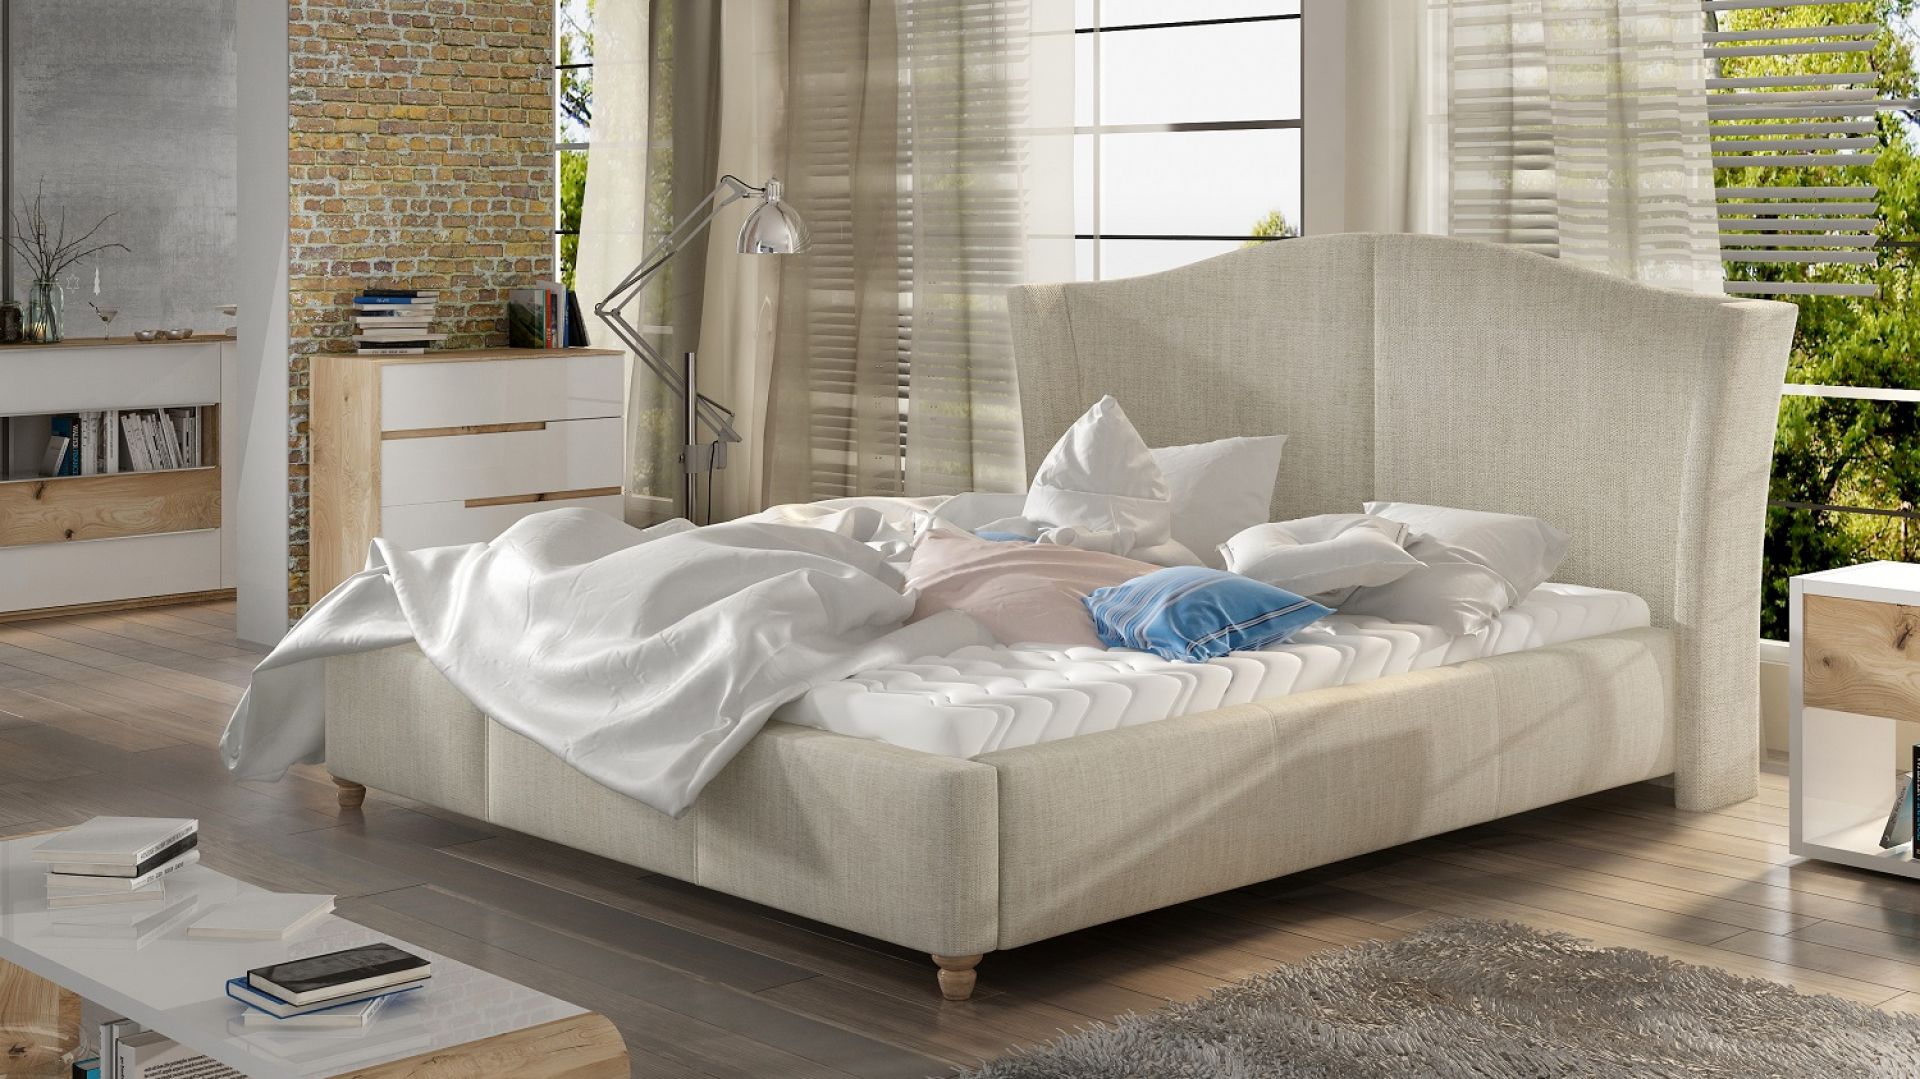 Łóżka do sypialni - wybierz kolekcje w wakacyjnych kolorach